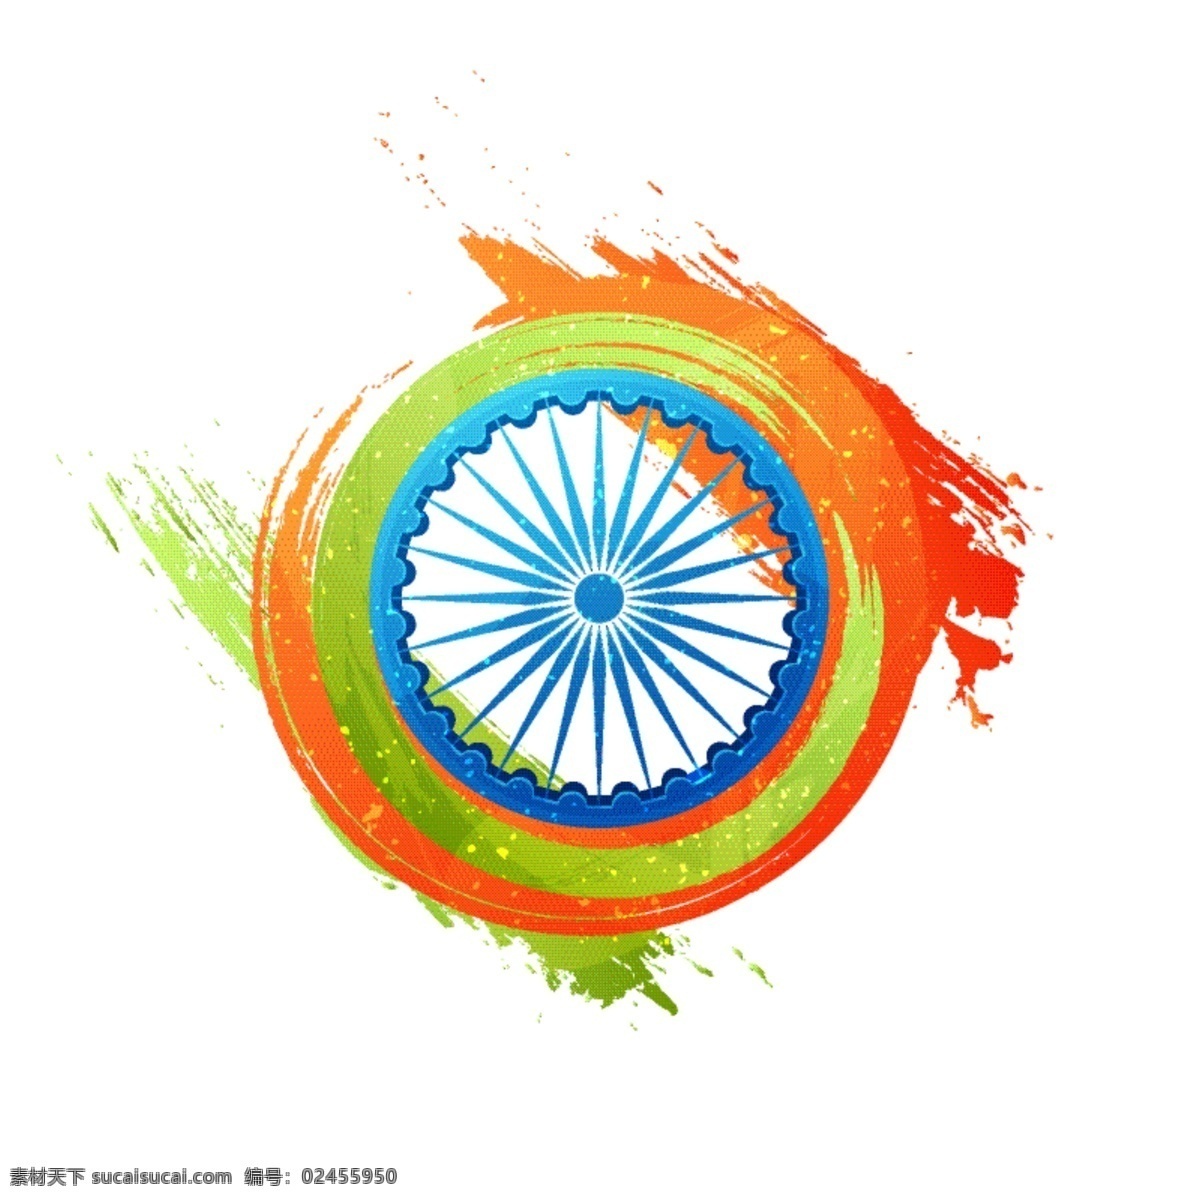 印度共和国 日 前后 背景 国旗 颜色 节日 印度 多彩的背景 圆 装饰 和平 自由 国家 印度国旗 背景颜色 一月 爱国 独立